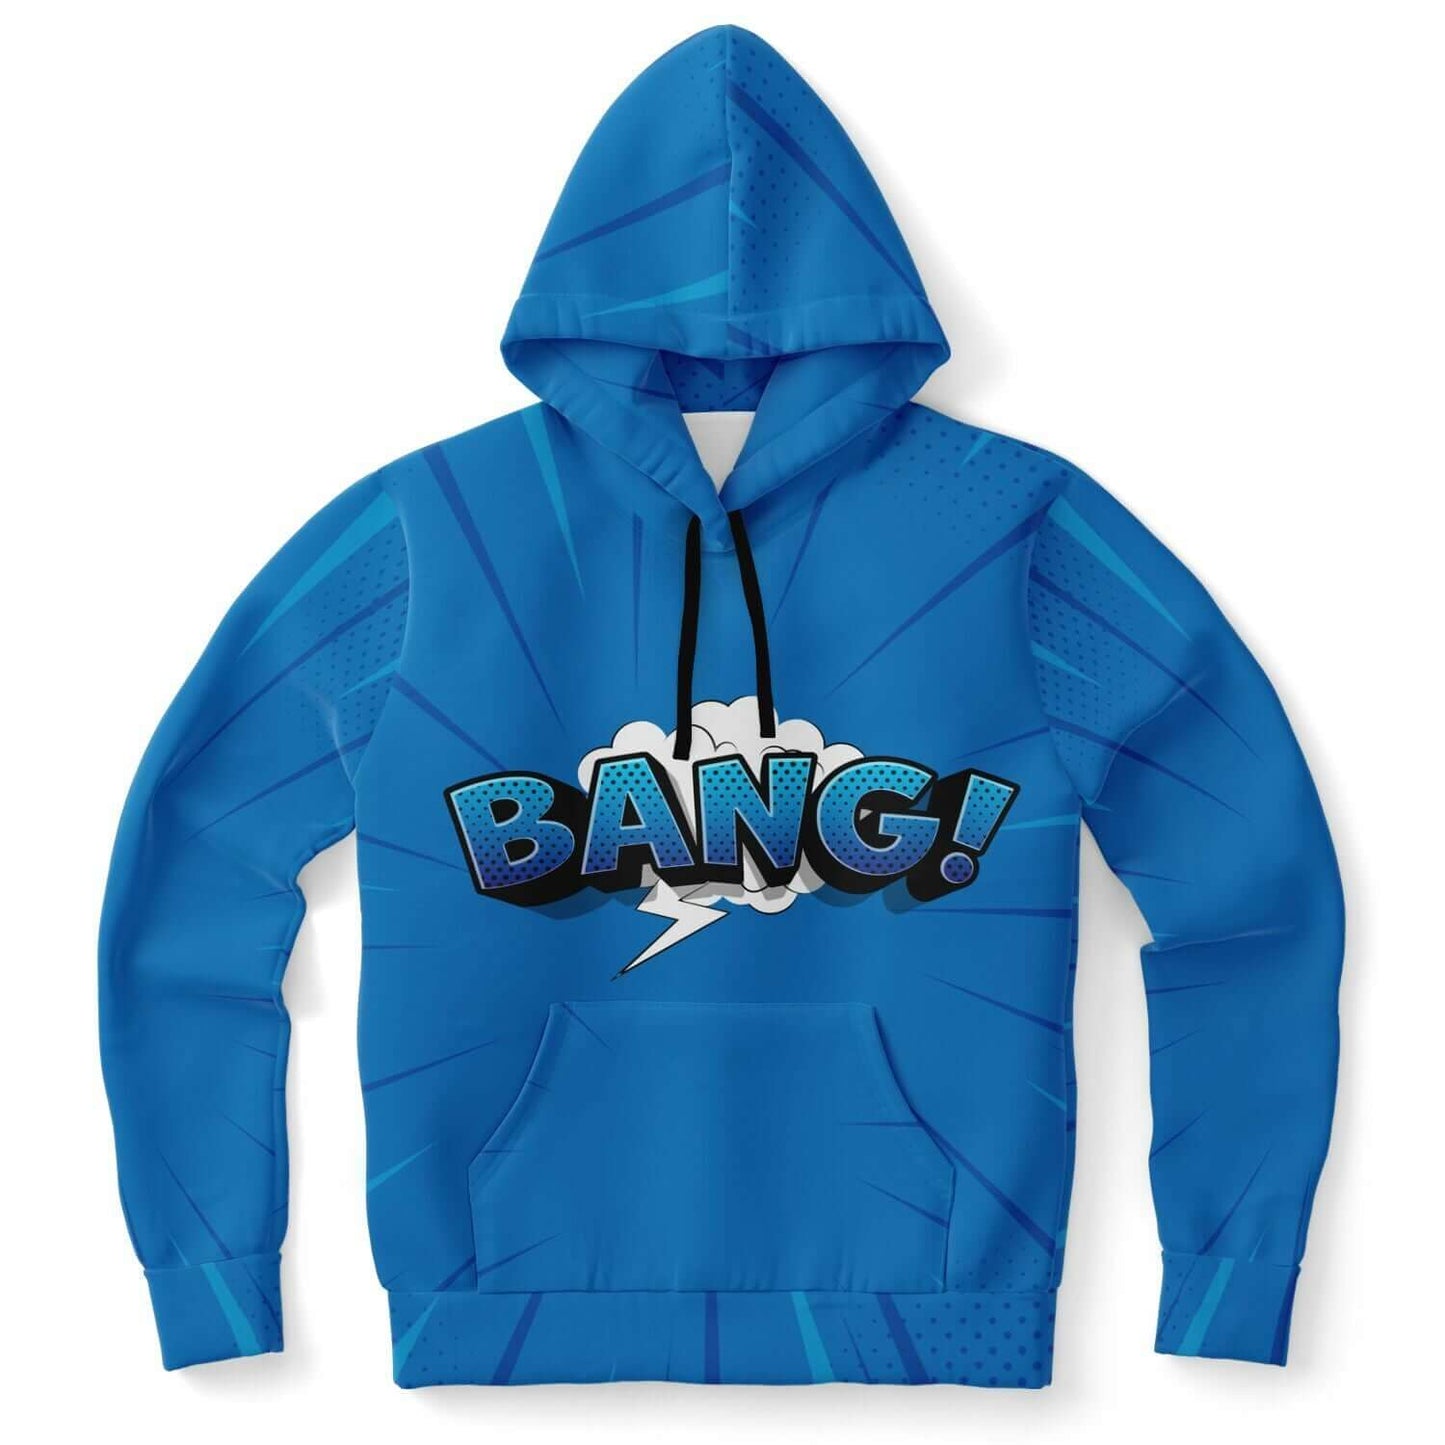 Bang! Blue Hoodie | Pop Art HD